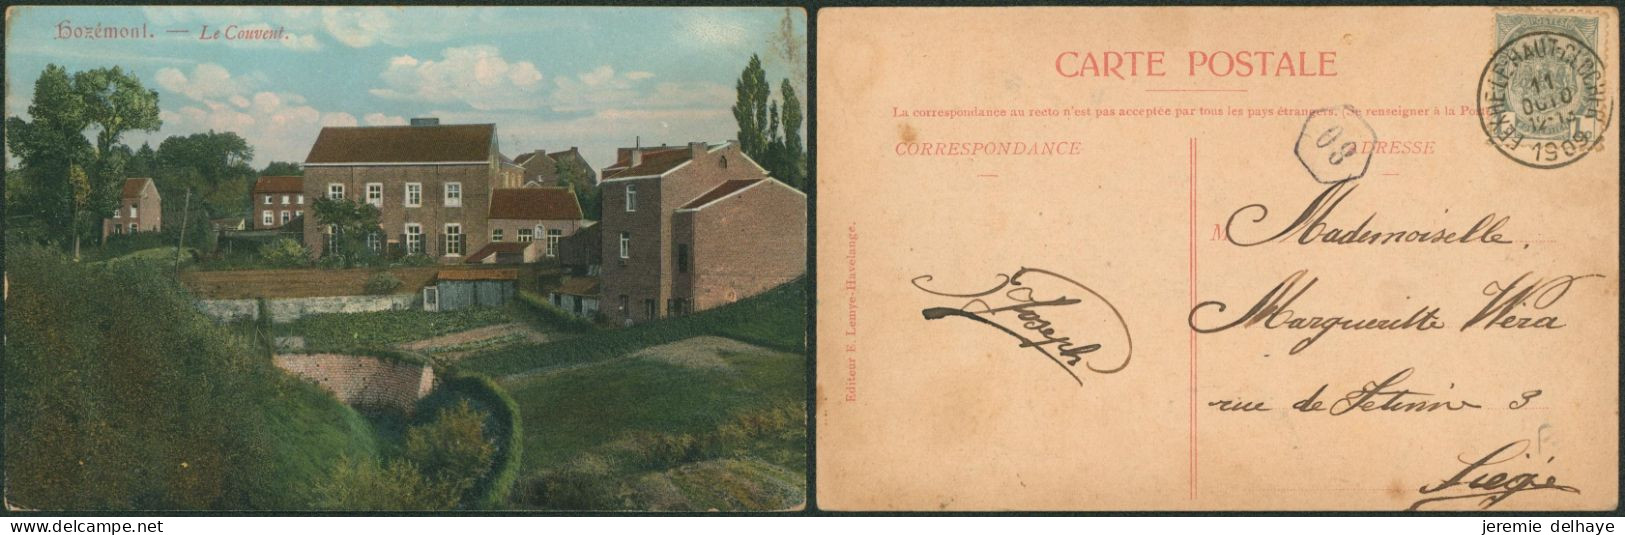 Carte Postale - Hozémont : Le Couvent (Colorisée, Edit. F. Lemye-Havelange) - Grâce-Hollogne